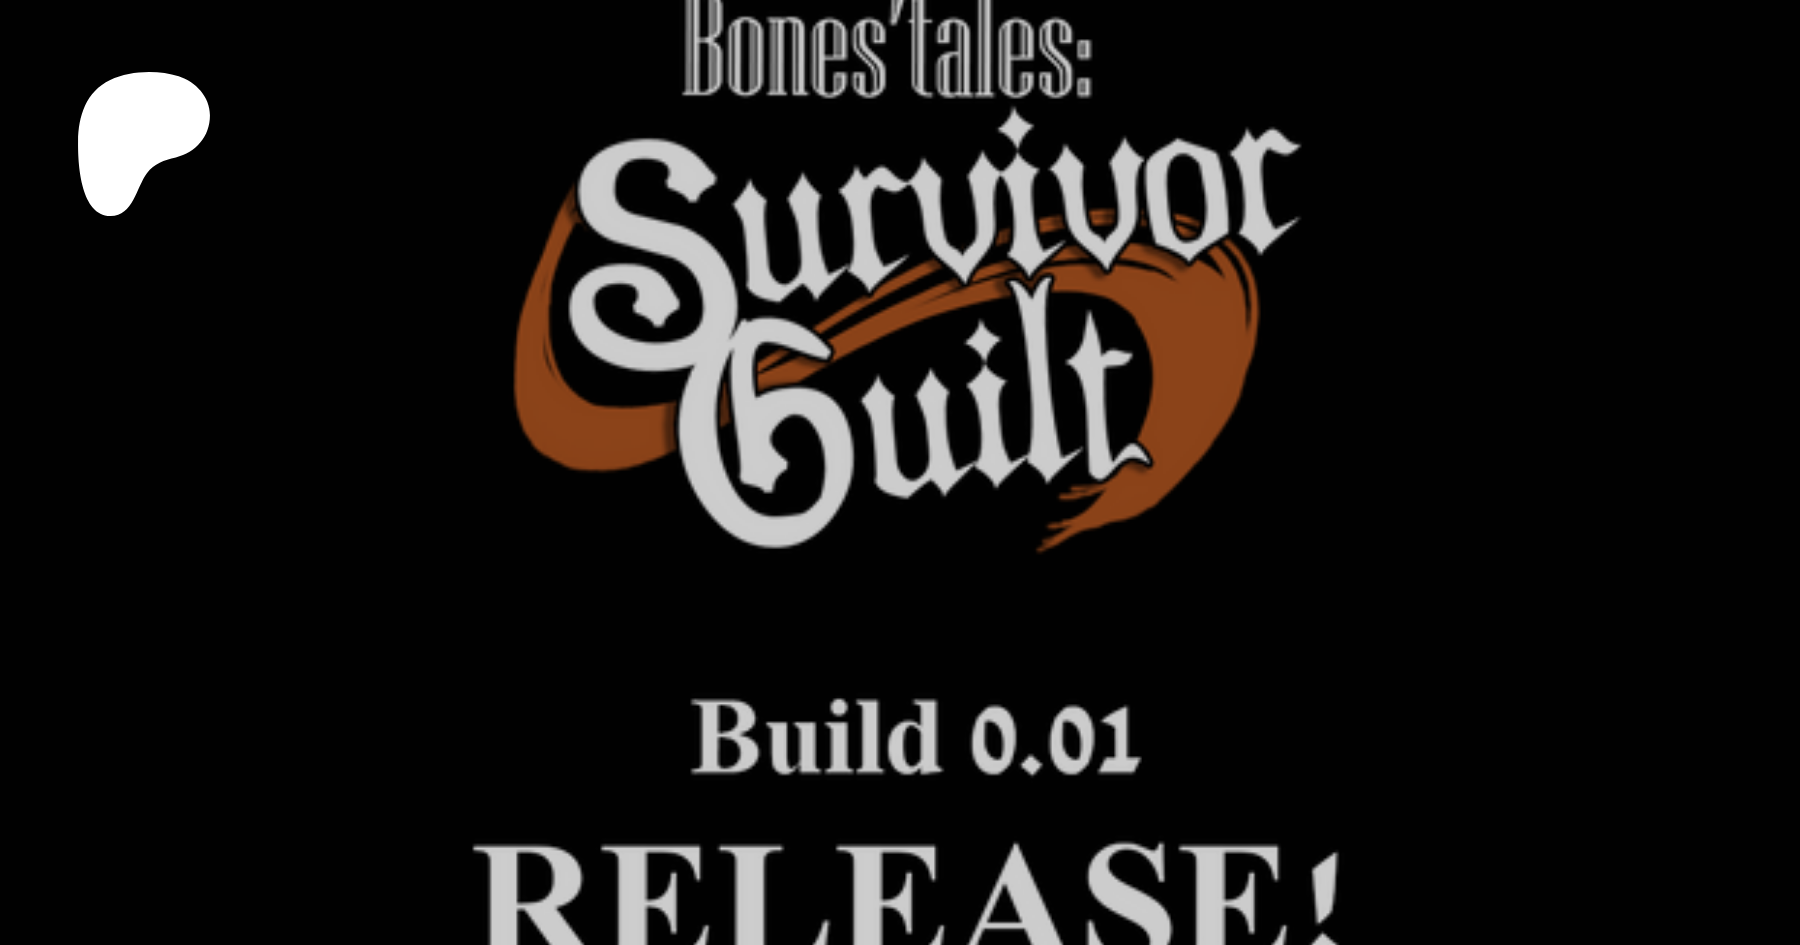 Bone tales survivor guilt